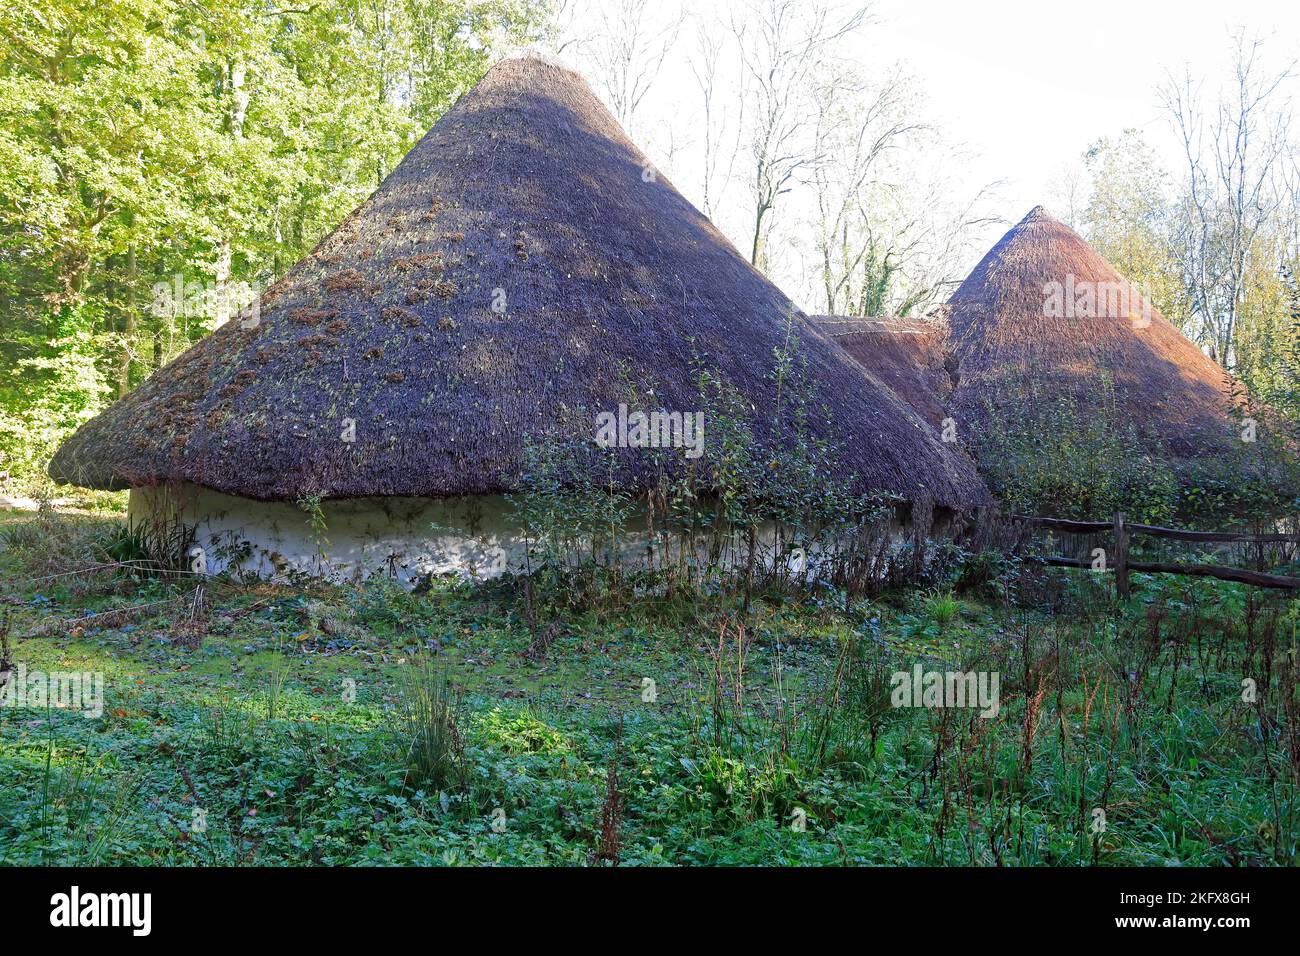 Maisons rondes celtiques au toit de chaume, Musée national d'histoire de St Fagans Amgueddfa Werin Cymru. Prise en novembre 2022. Automne Banque D'Images